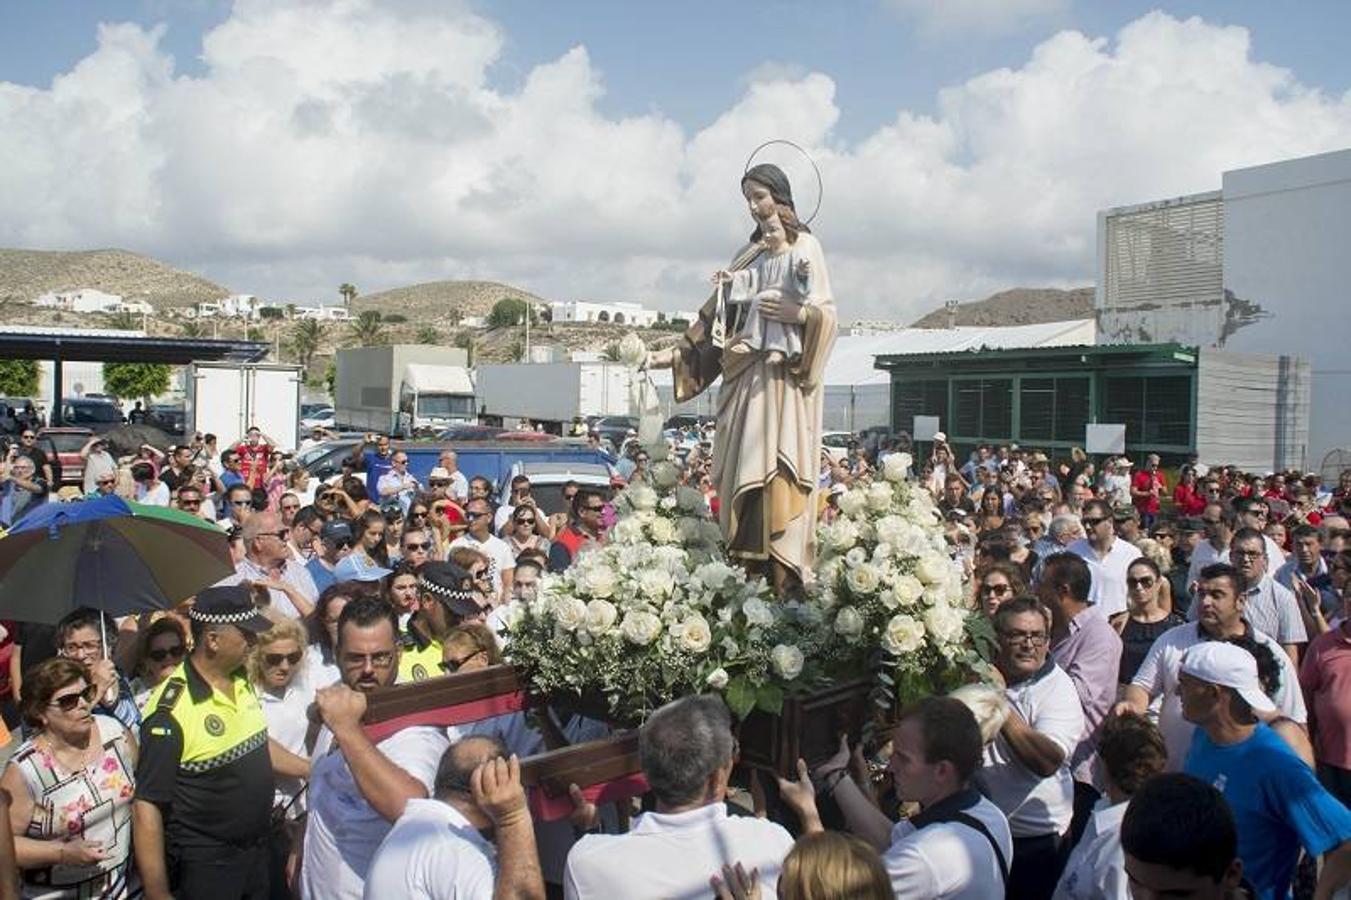 Carboneras celebró las fiestas del Pescador y del Turismo en honor a la Virgen del Carmen, patrona del mar. El municipio vivió dos días en los que una amplia programación hizo que vecinos y turistas disfrutaran de diversas actividades.